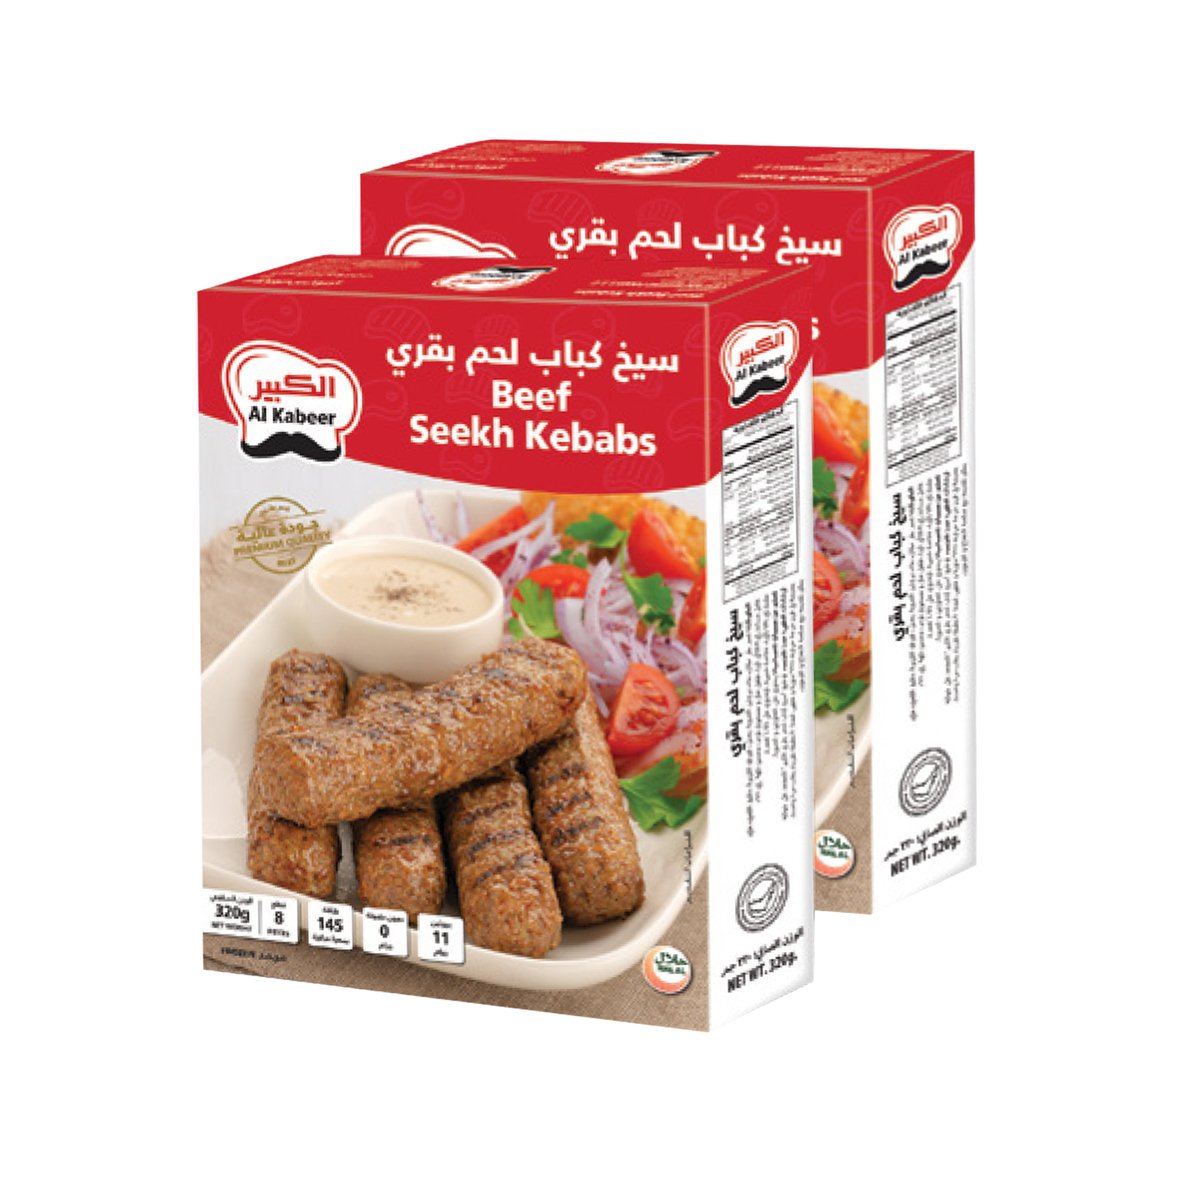 Al Kabeer Beef Seekh Kebabs Value Pack 2 x 320 g